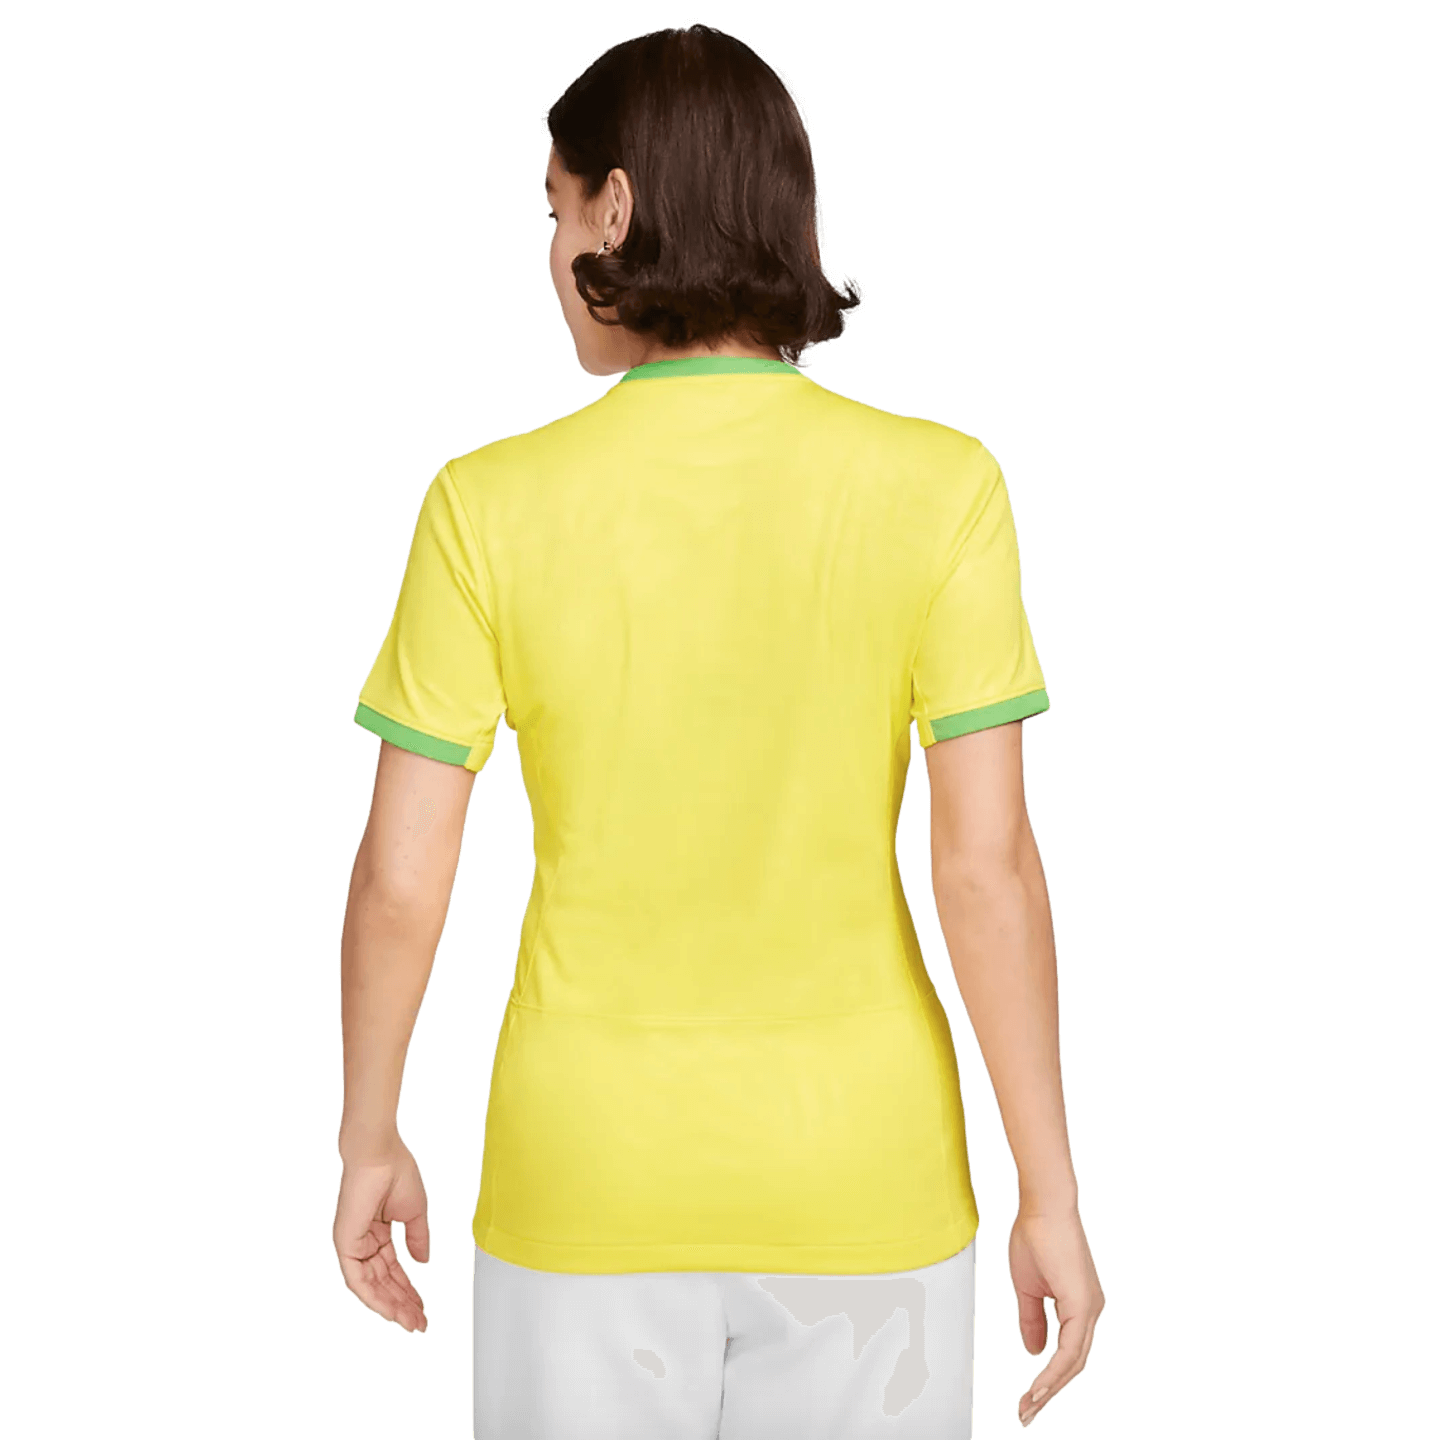 Nike Brazil 2023 Womens Home Jersey